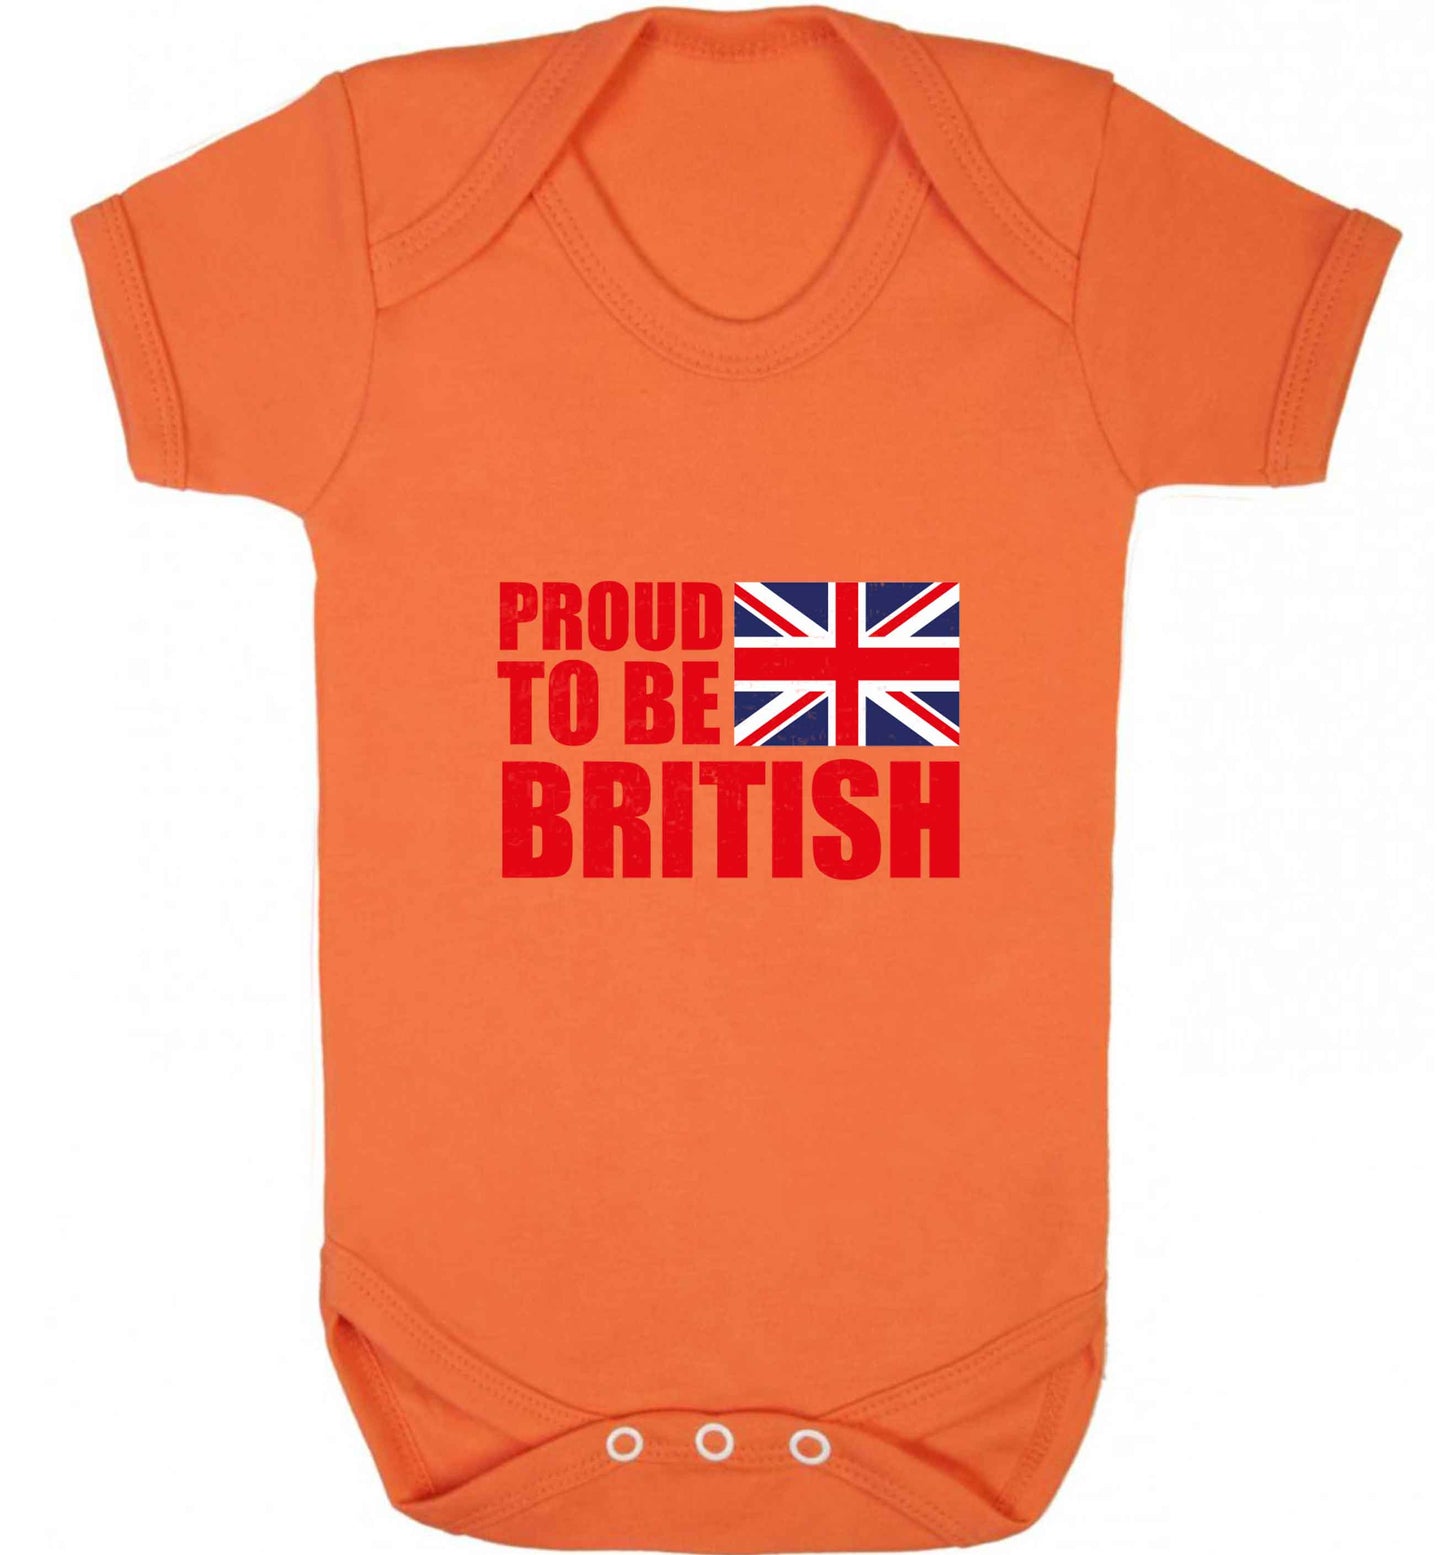 Proud to be British baby vest orange 18-24 months